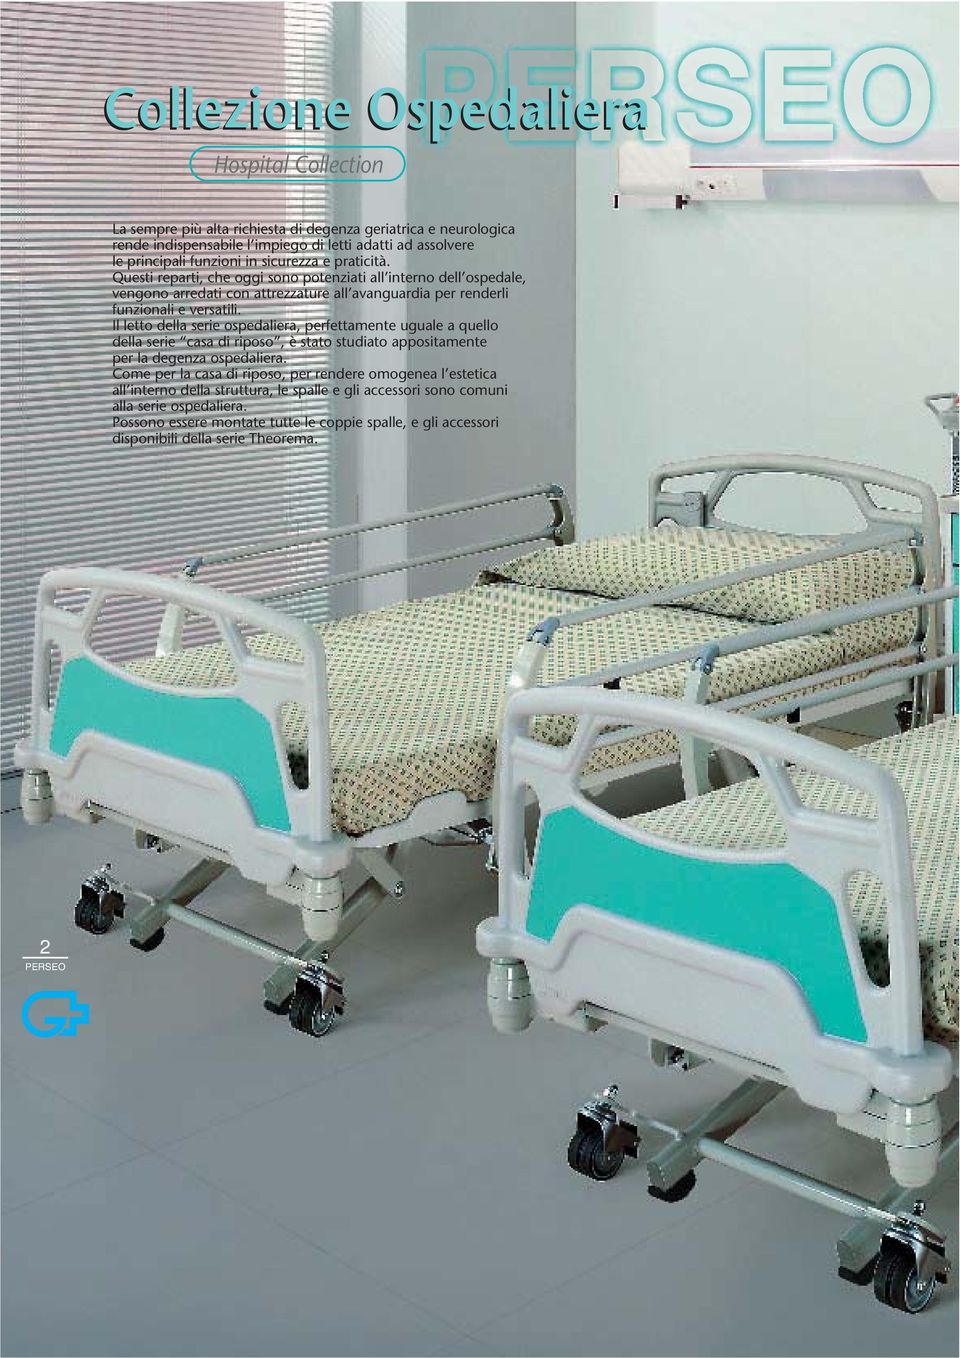 Il letto della serie ospedaliera, perfettamente uguale a quello della serie casa di riposo, è stato studiato appositamente per la degenza ospedaliera.